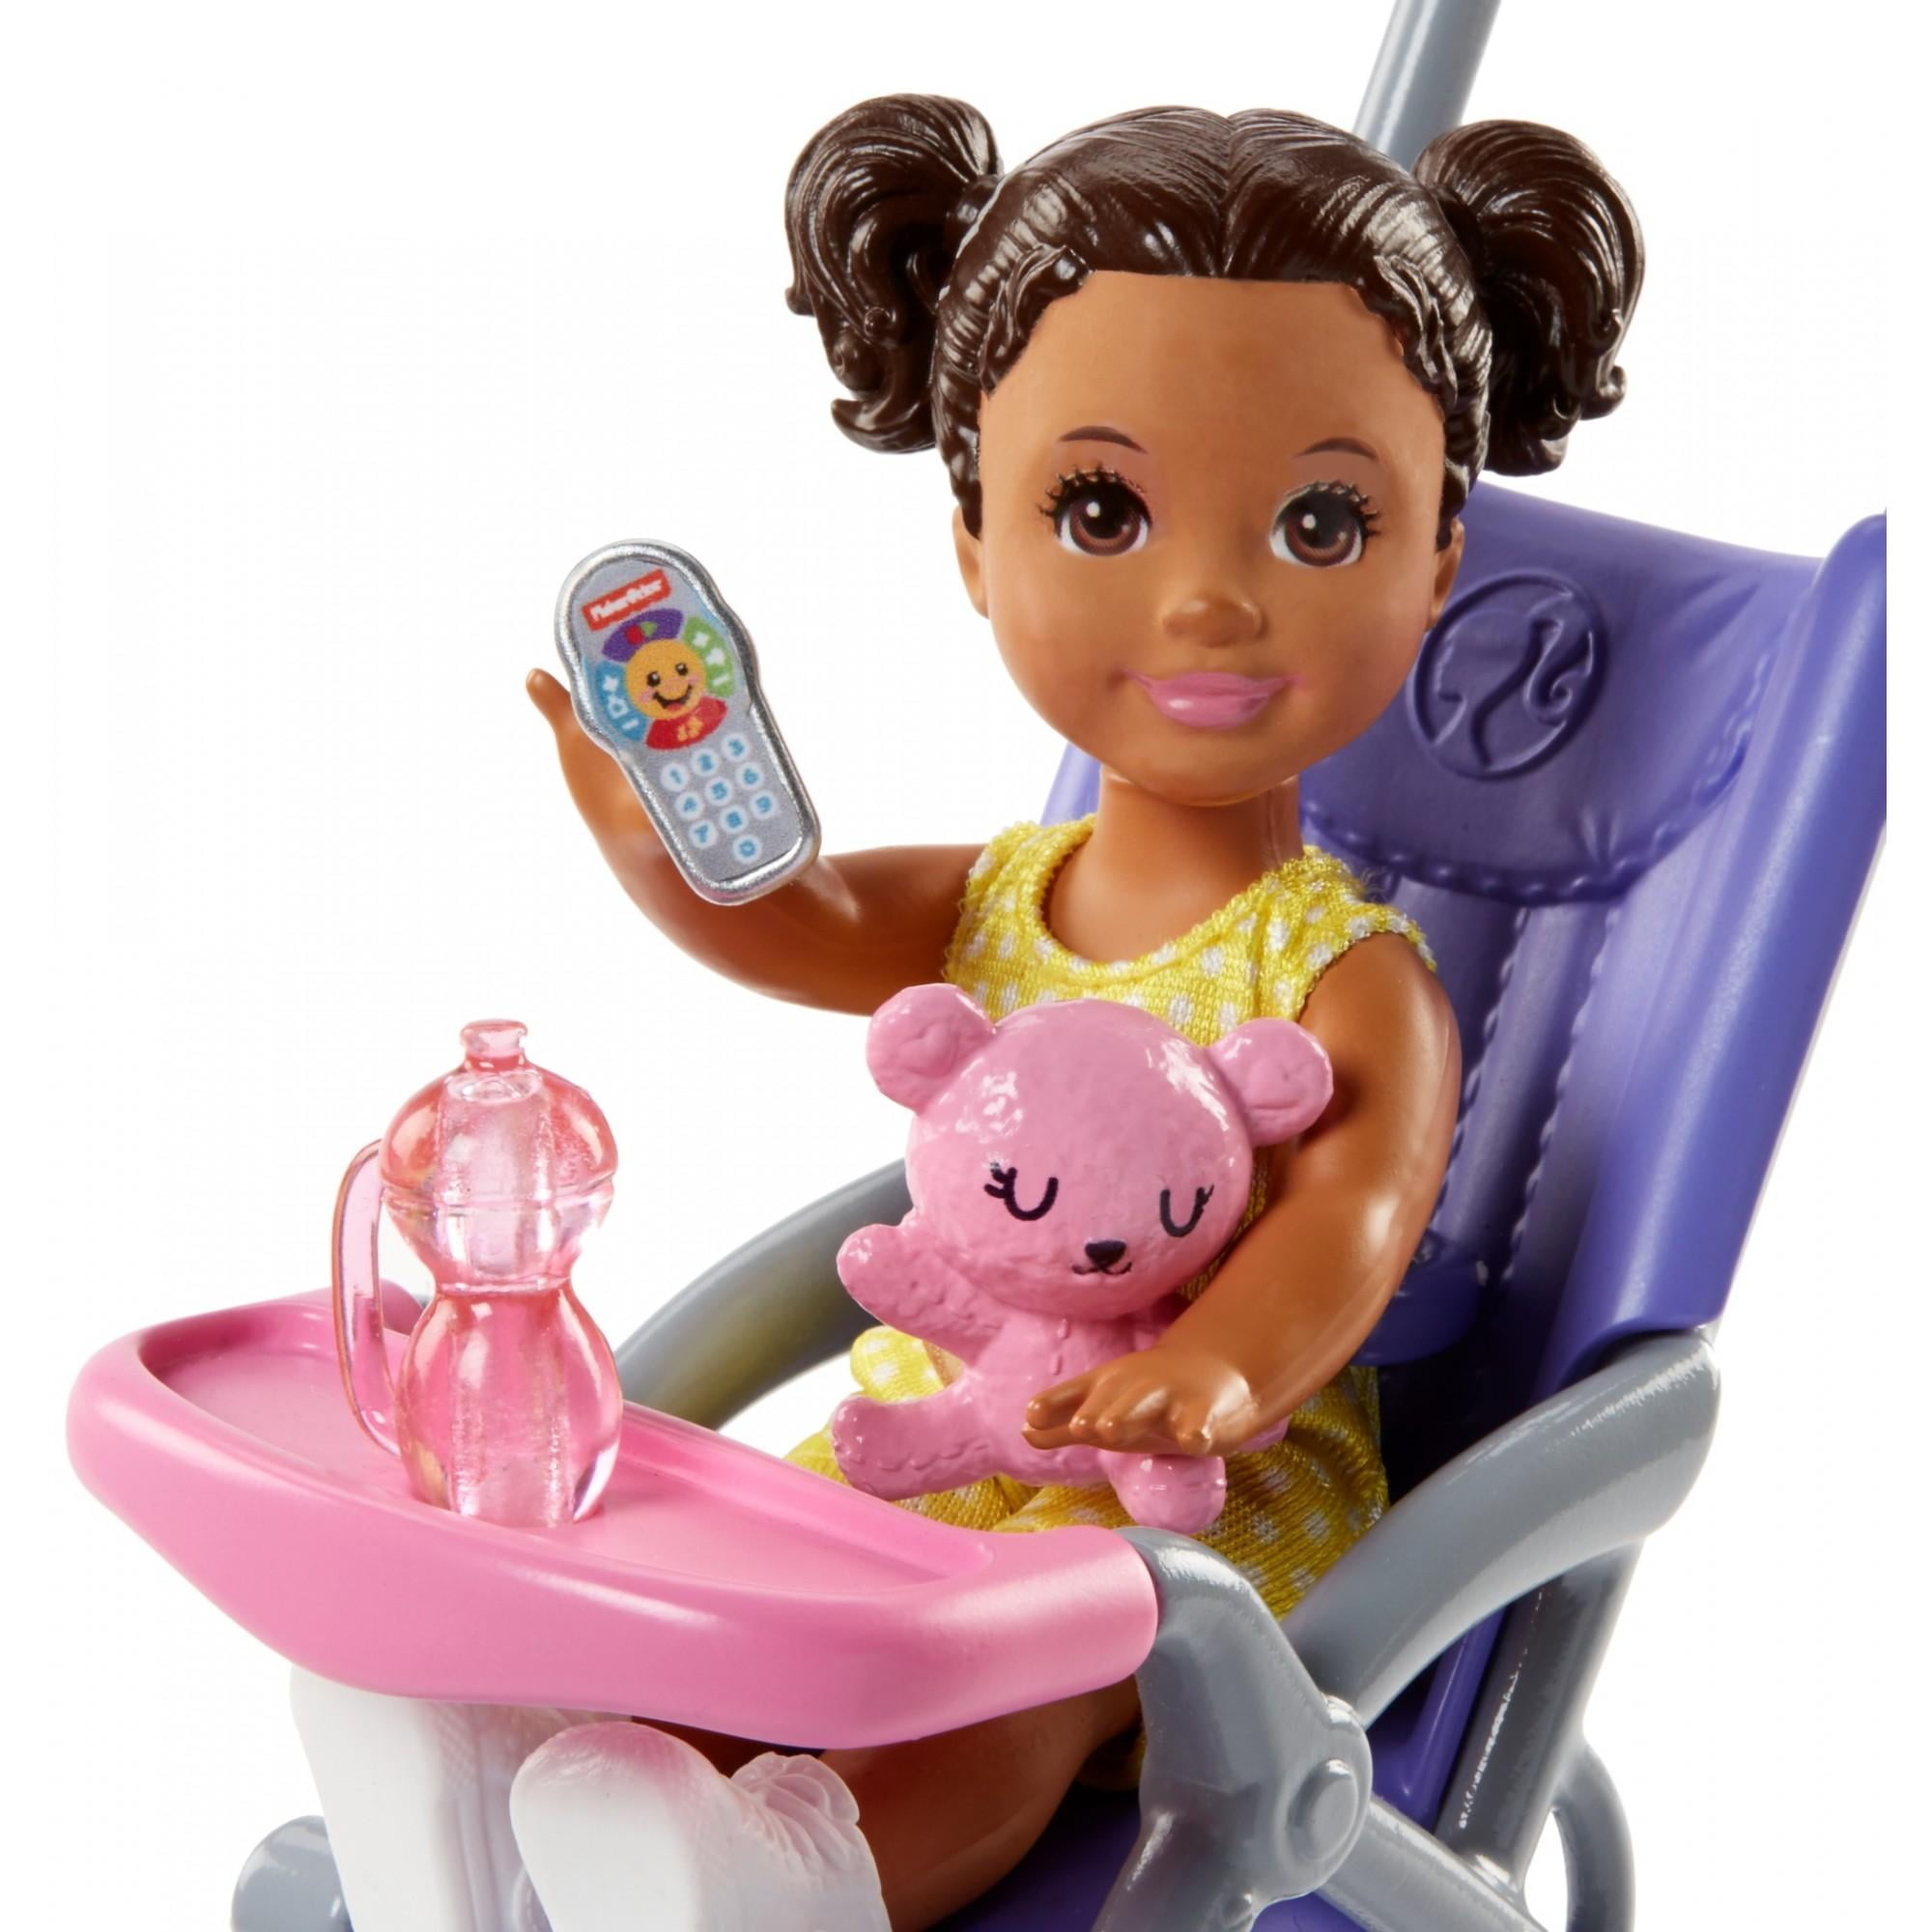 barbie skipper babysitter stroller